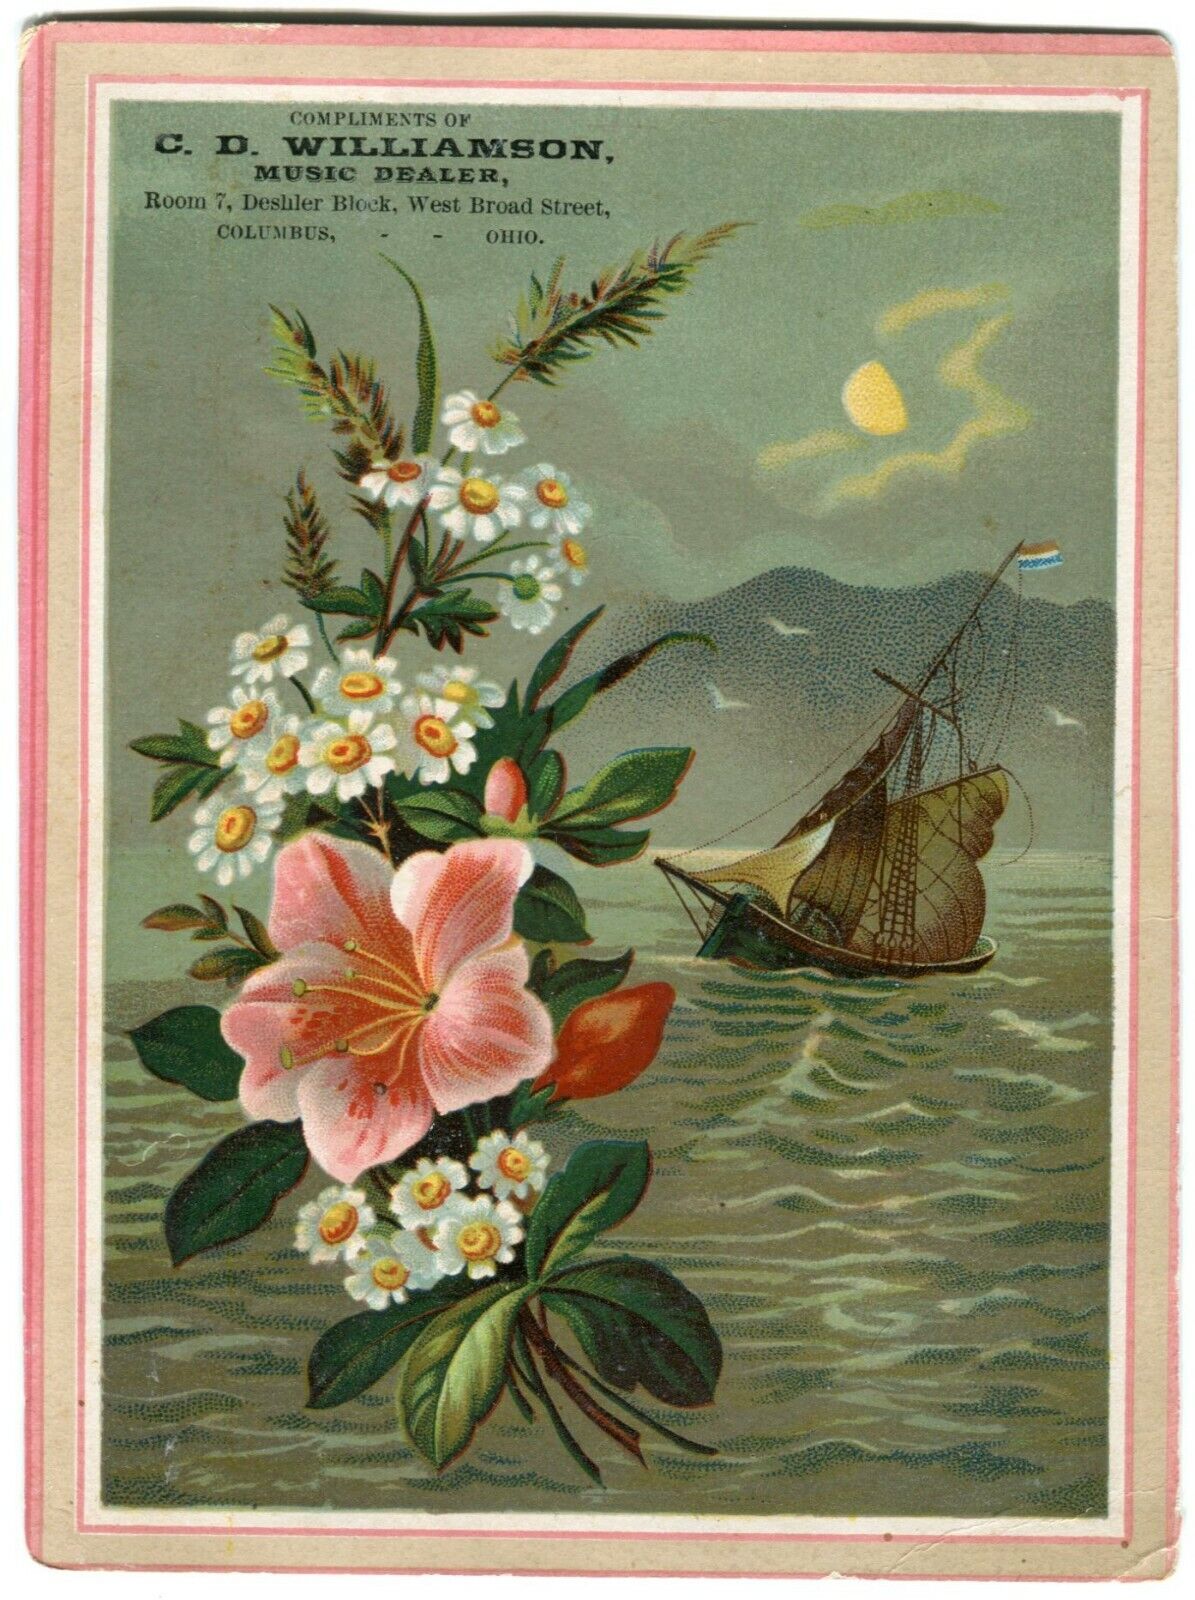 Antique Nautical Victorian Trade Card CD Williamson Music Dealer Columbus Ohio